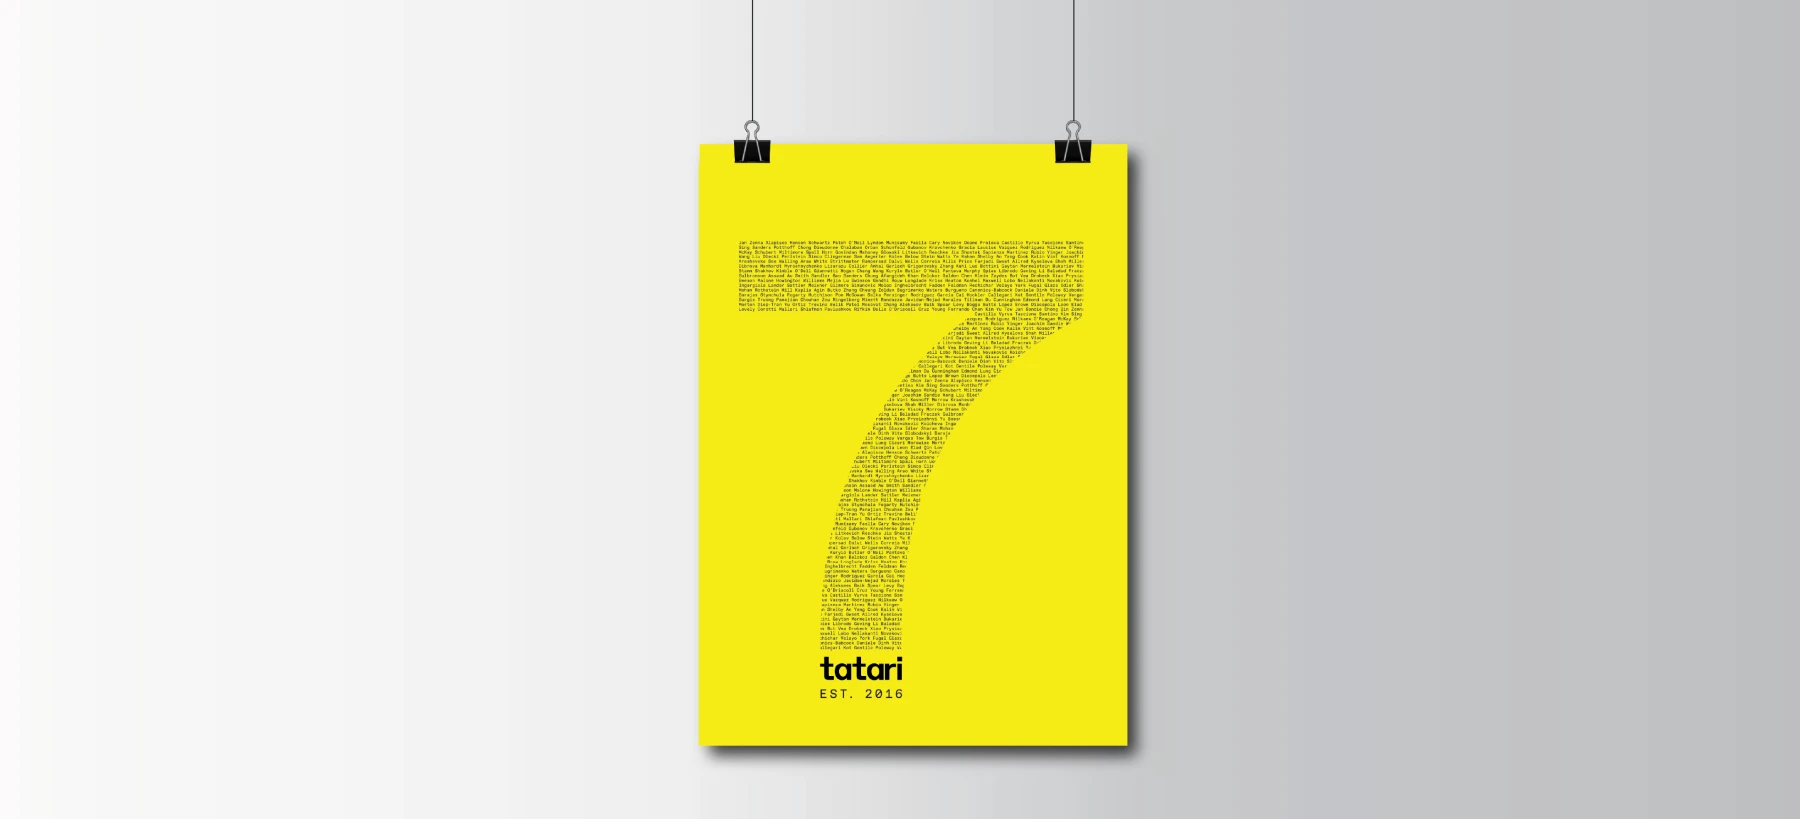 Tatari's 7 year anniversary header